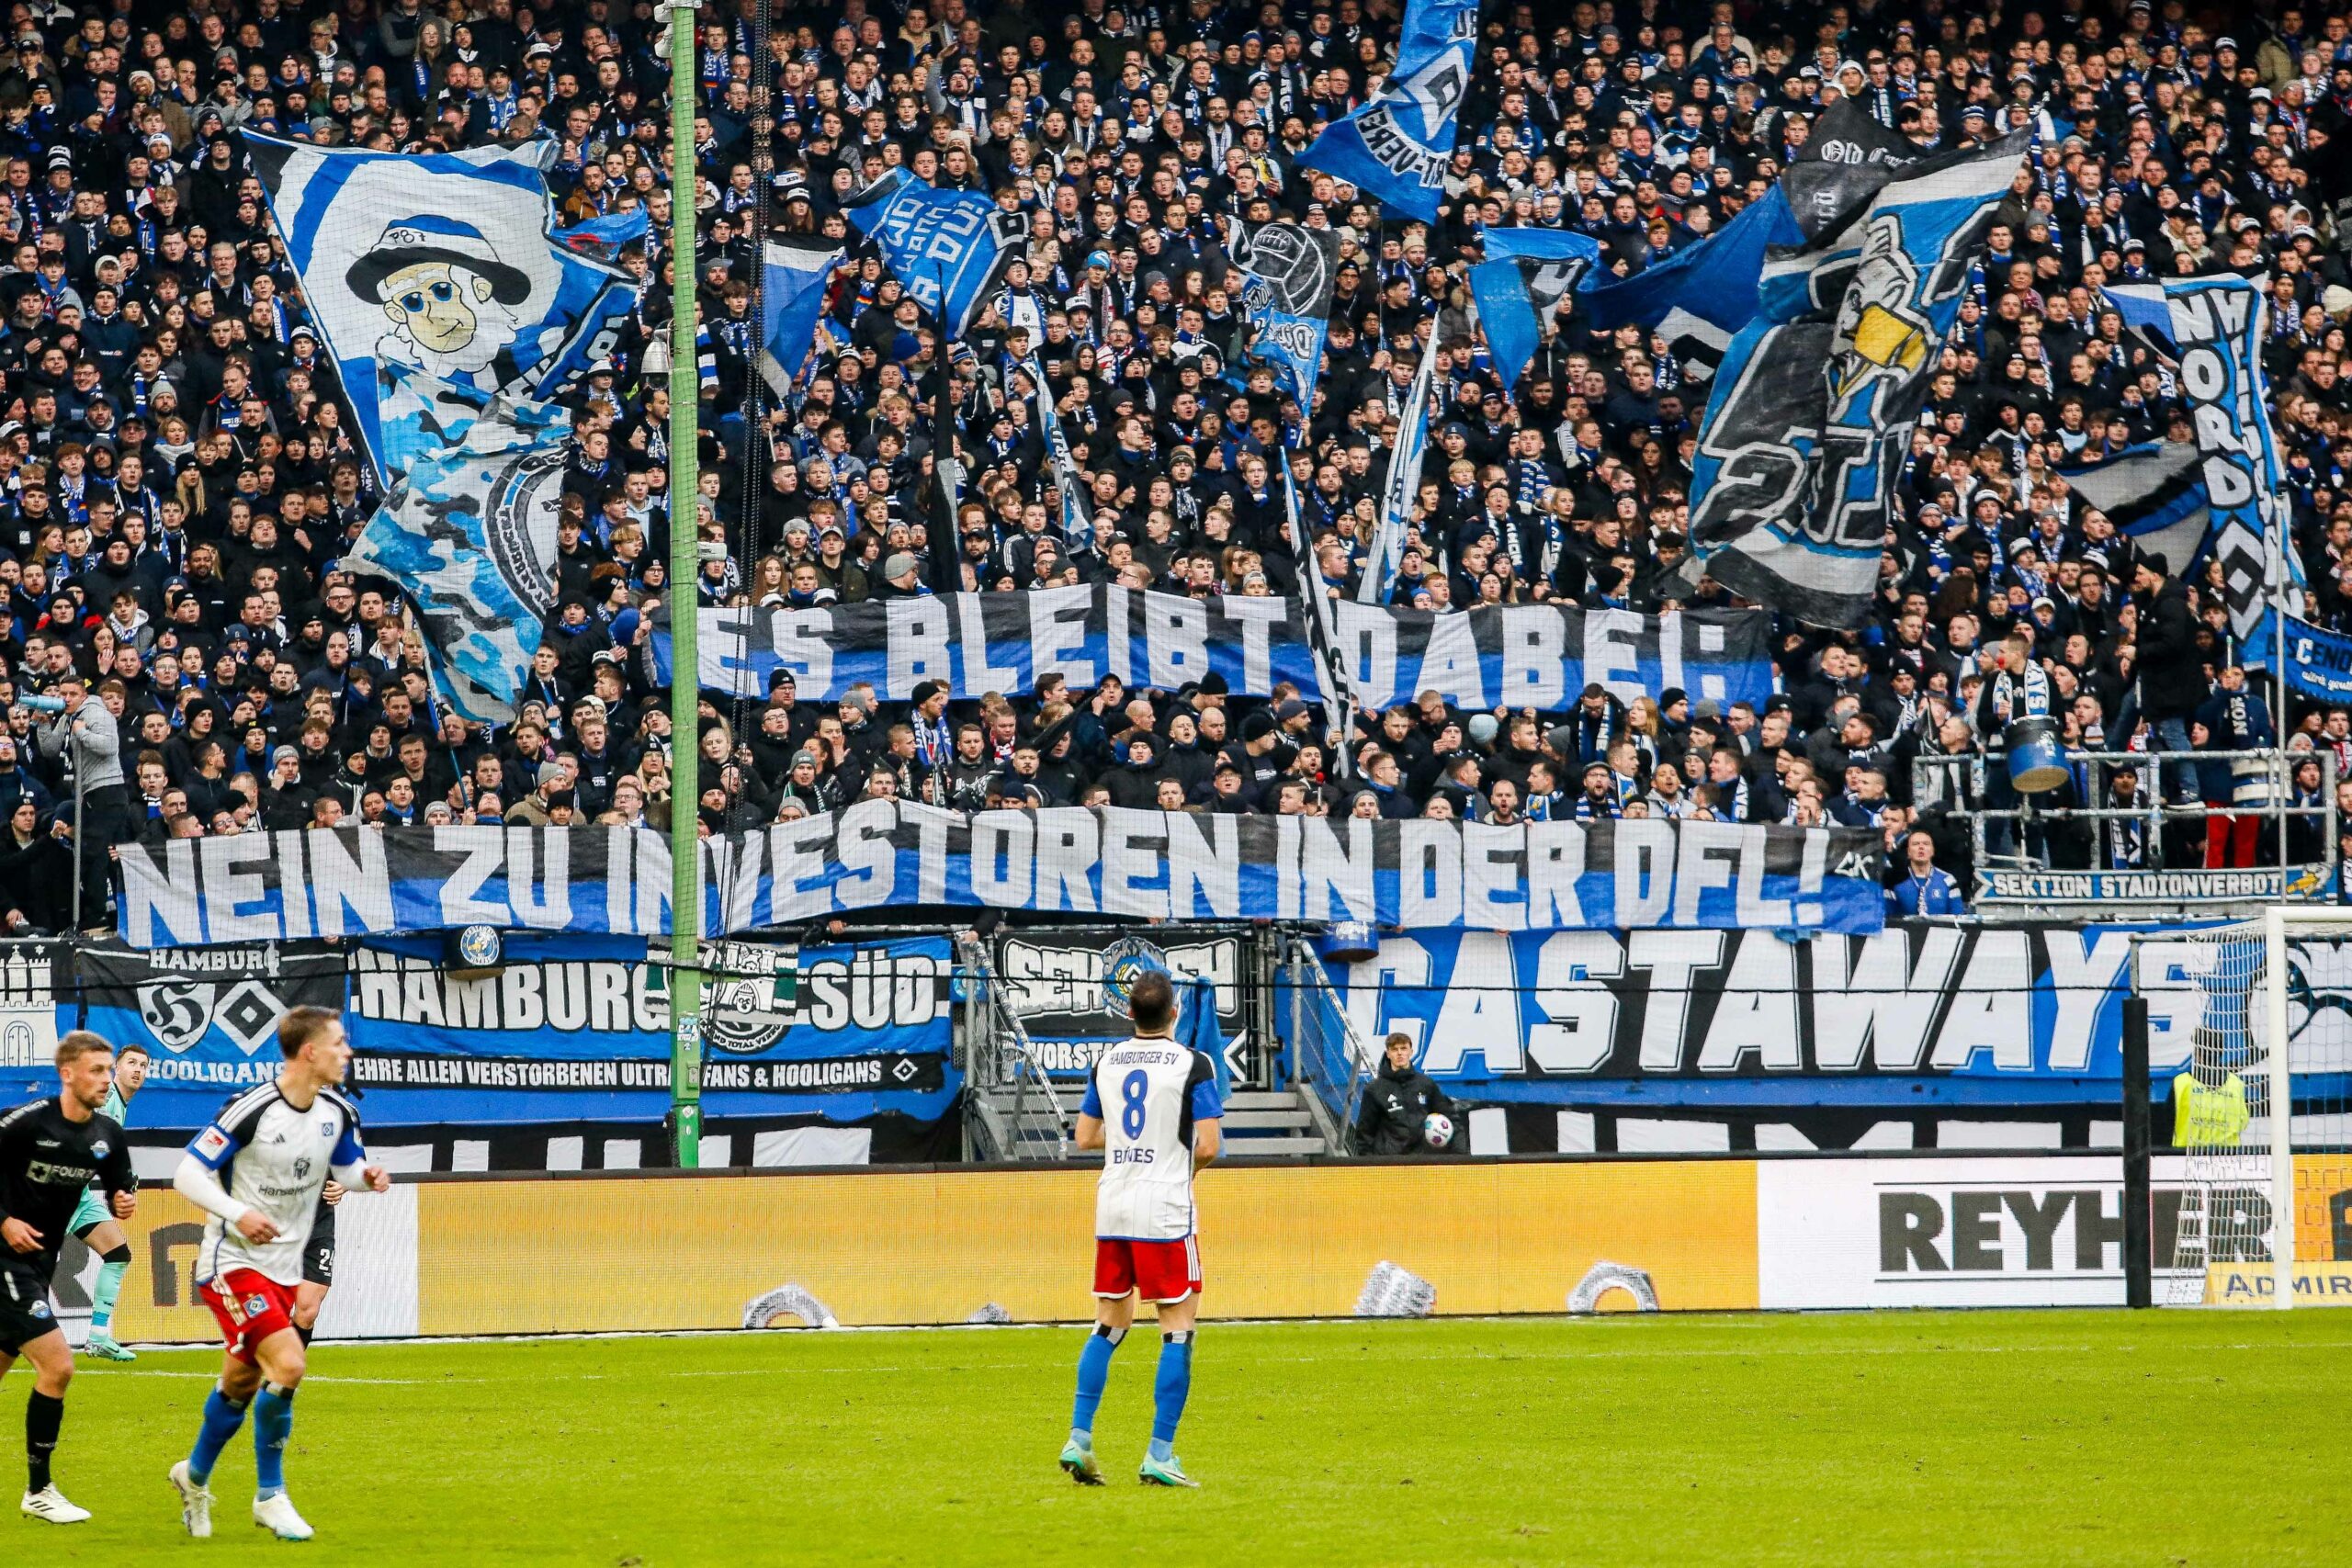 Banner der HSV-Fans gegen einen Investoren-Einstieg in der DFL